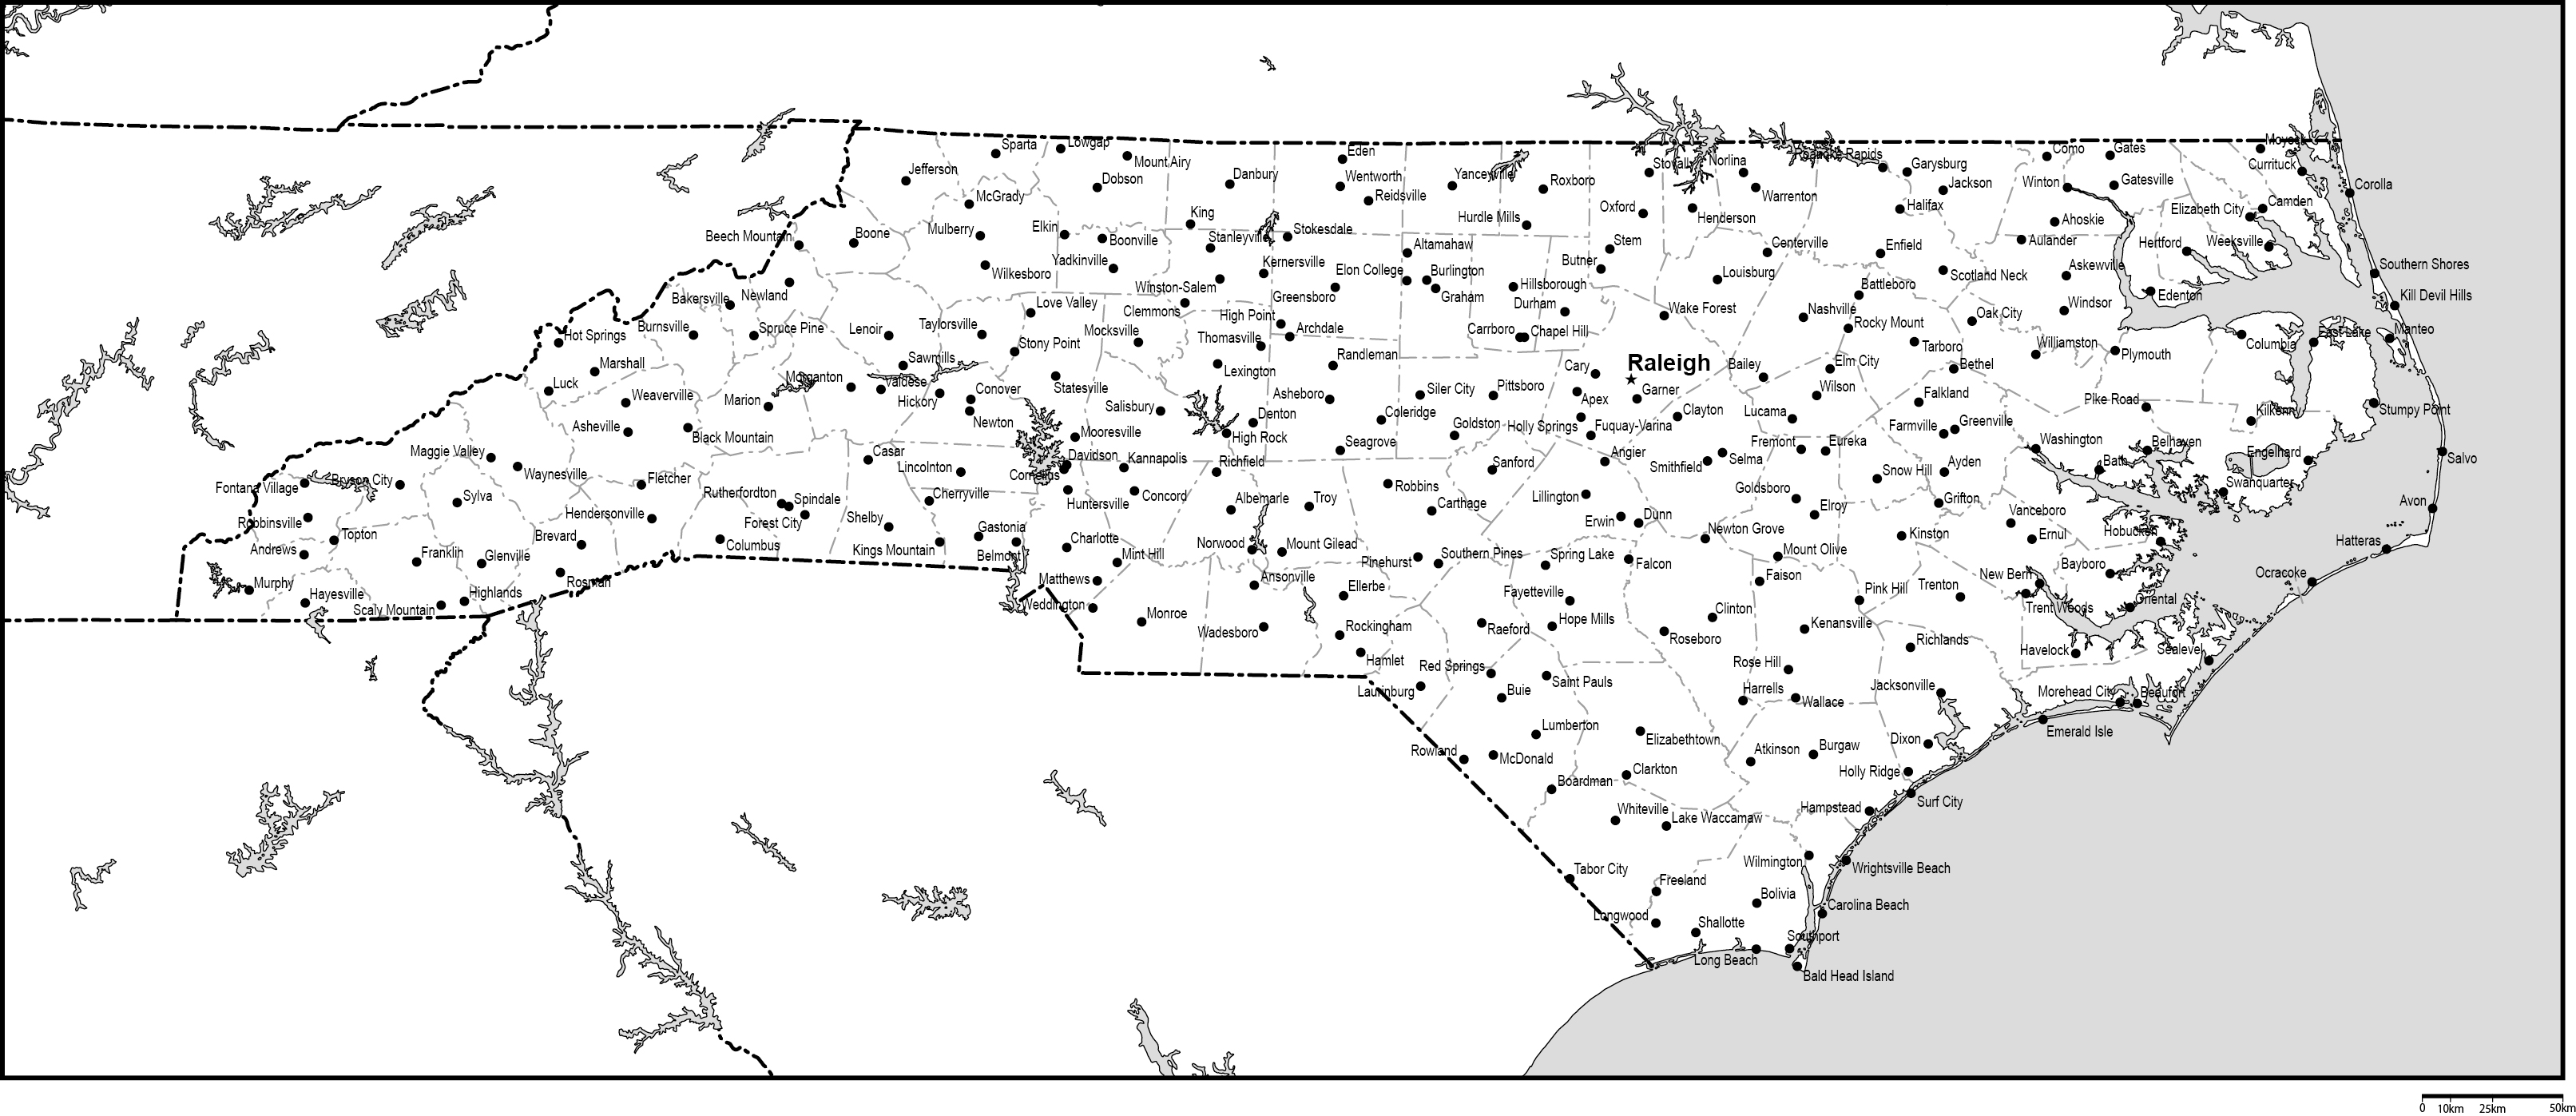 ノースカロライナ州郡分け白地図州都・主な都市あり(英語)フリーデータの画像